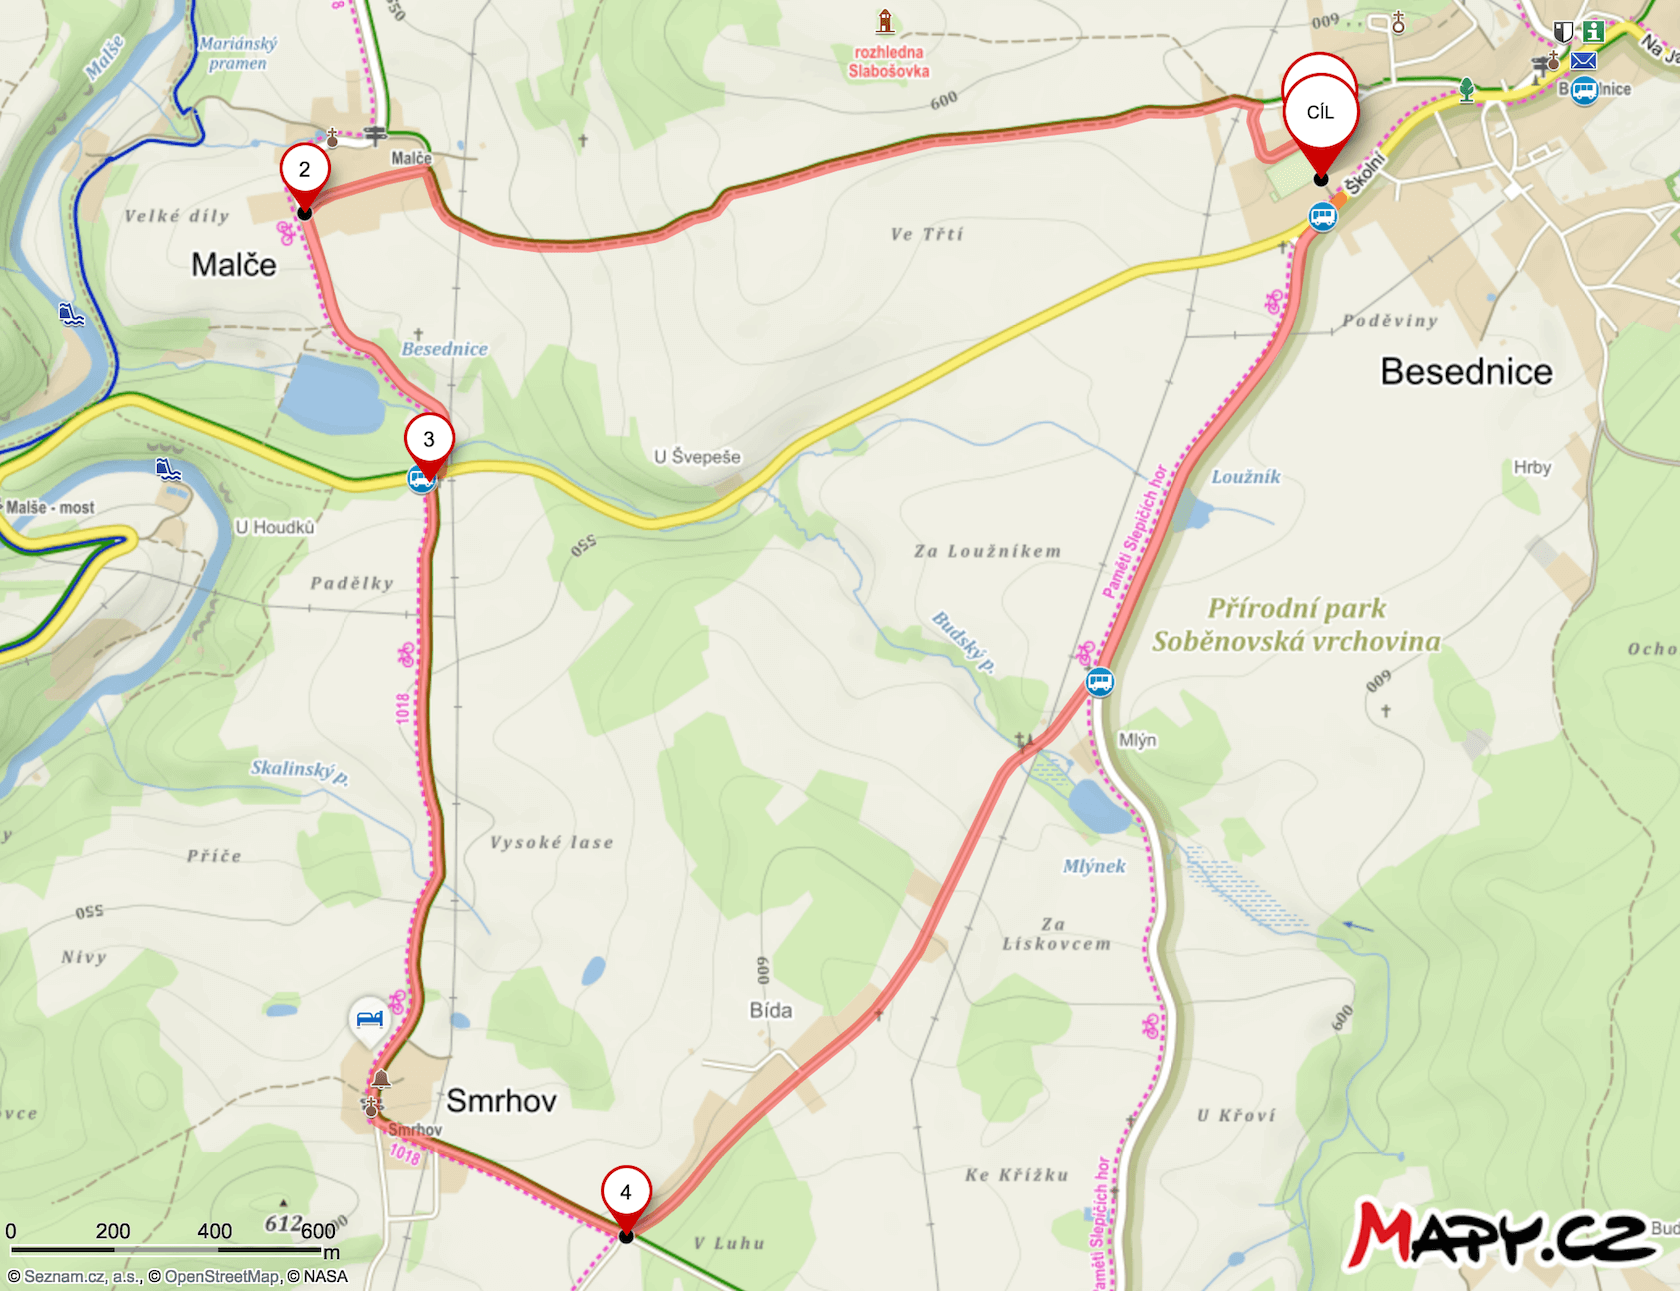 Mapa trasy závodu MaRUNka 2019 – 7,5 km